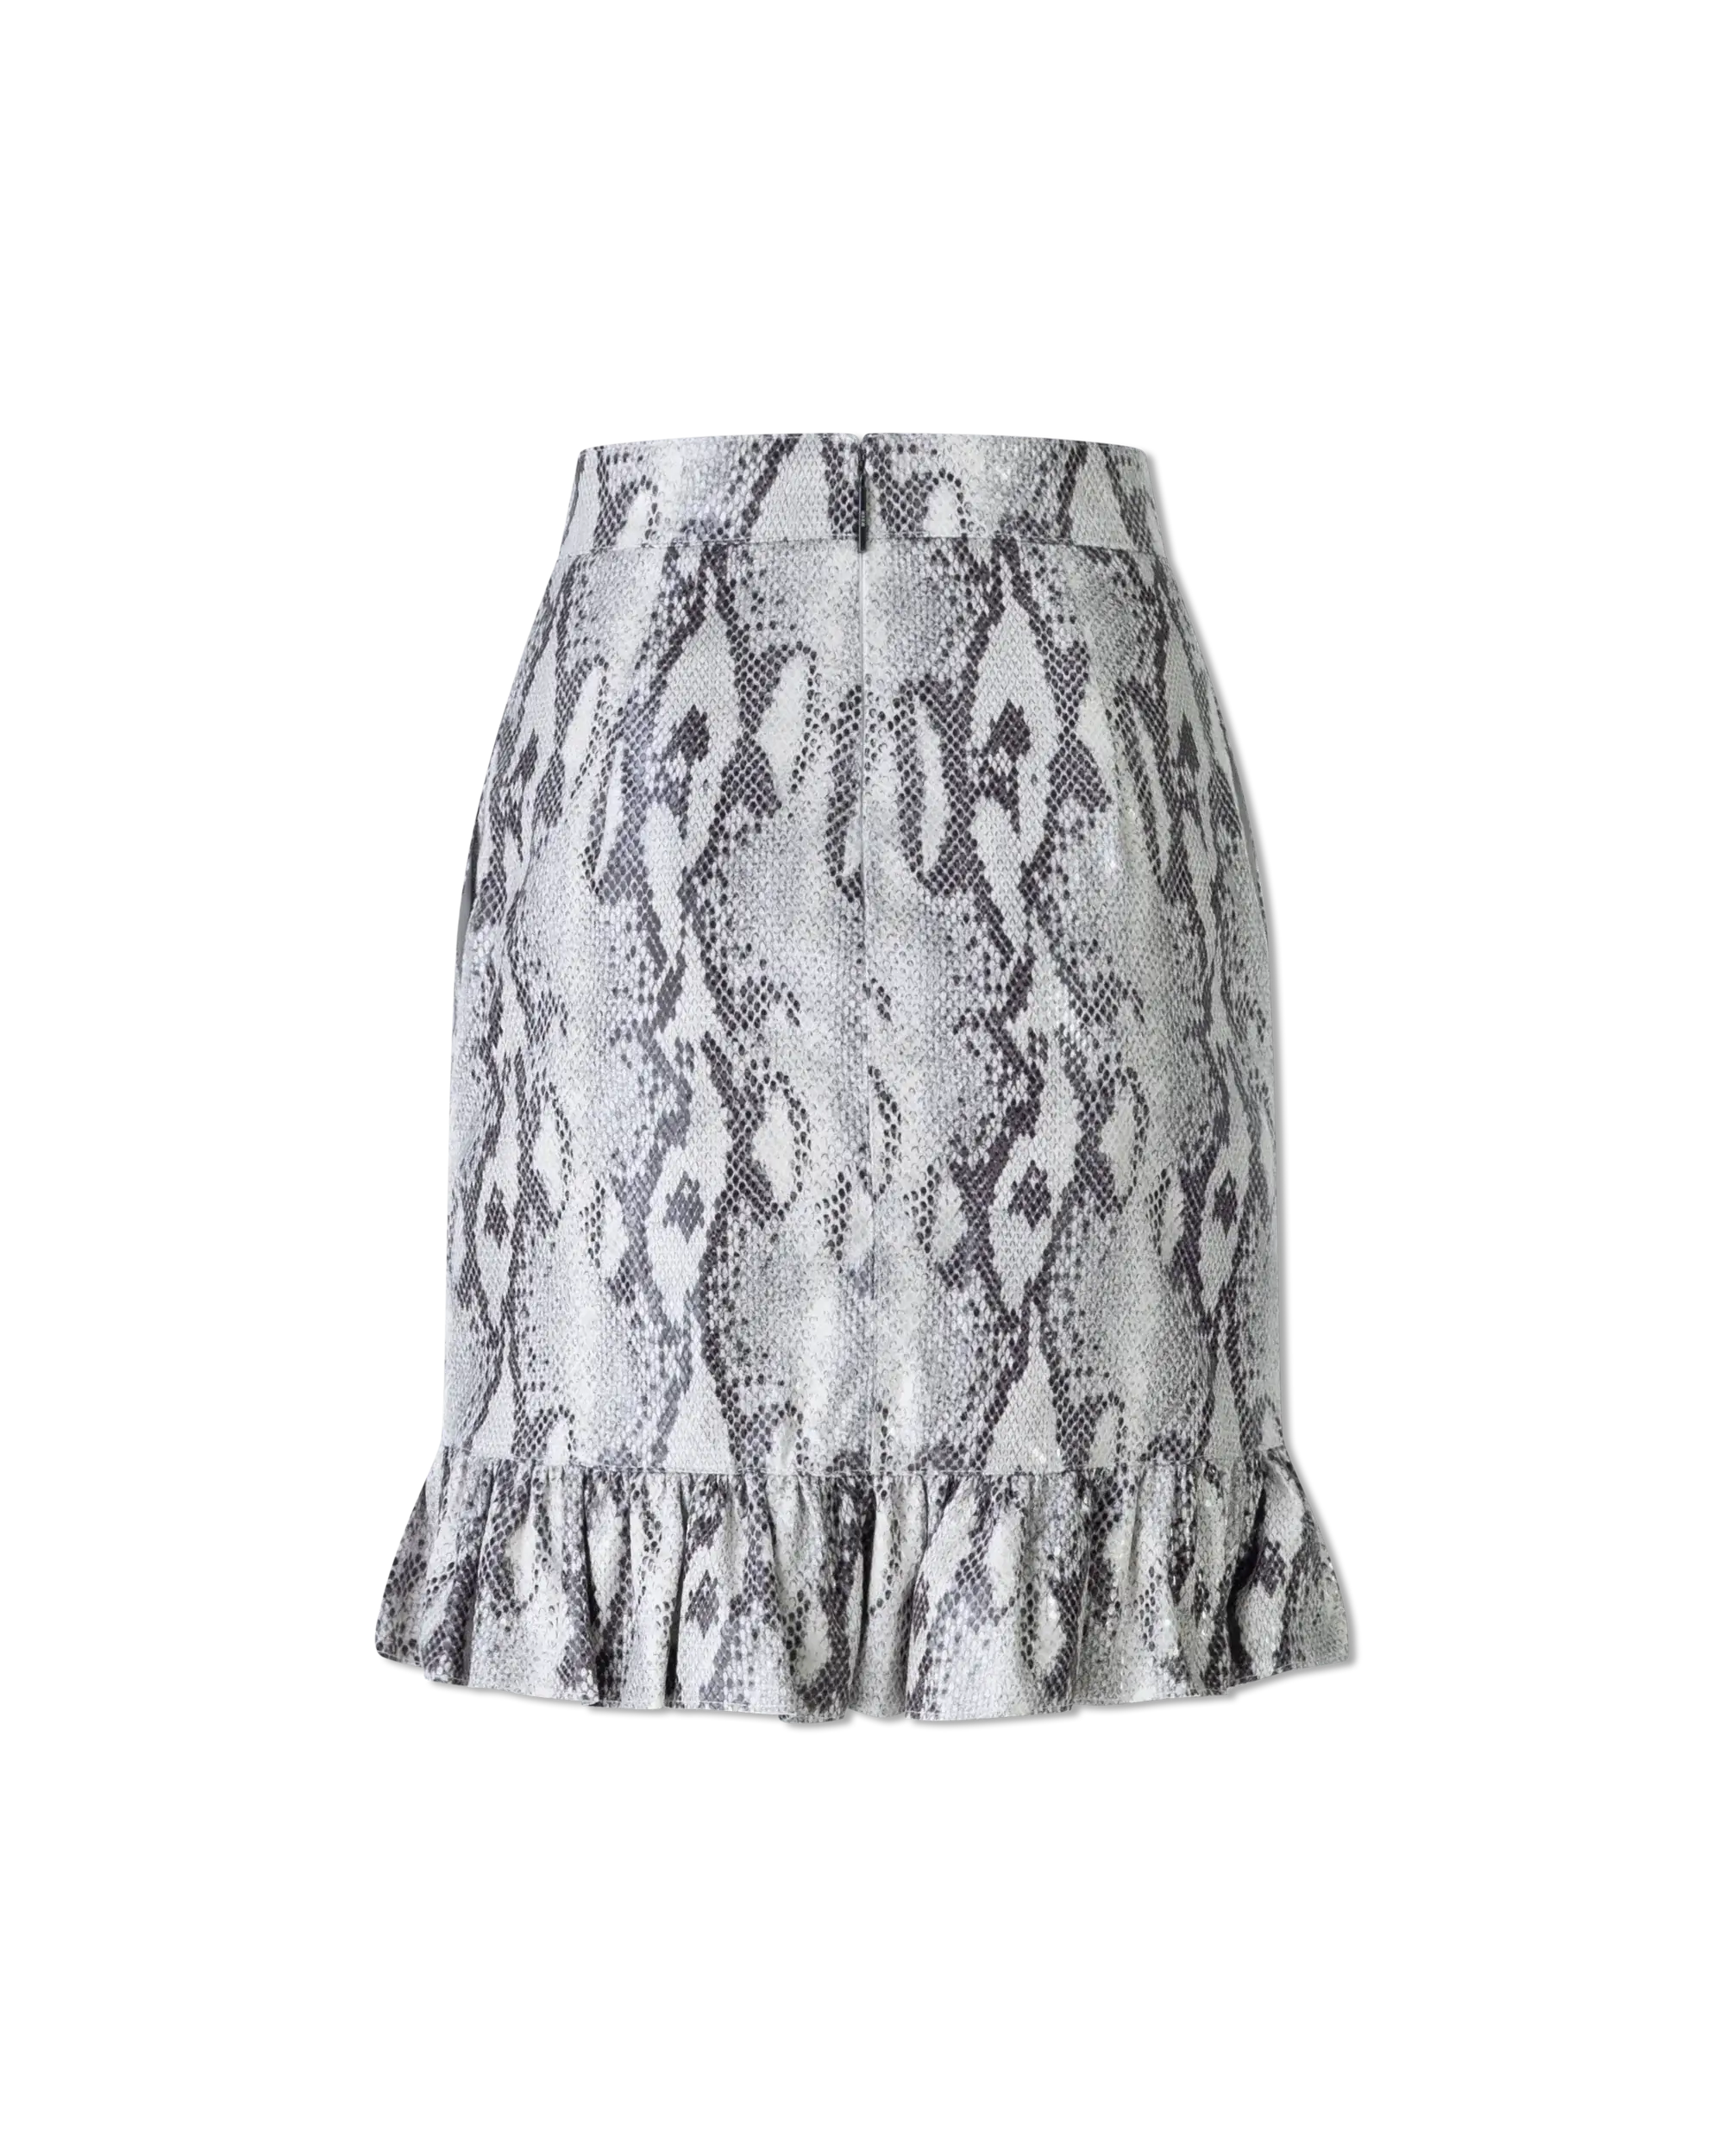 Ruffled Snakeskin Print Skirt